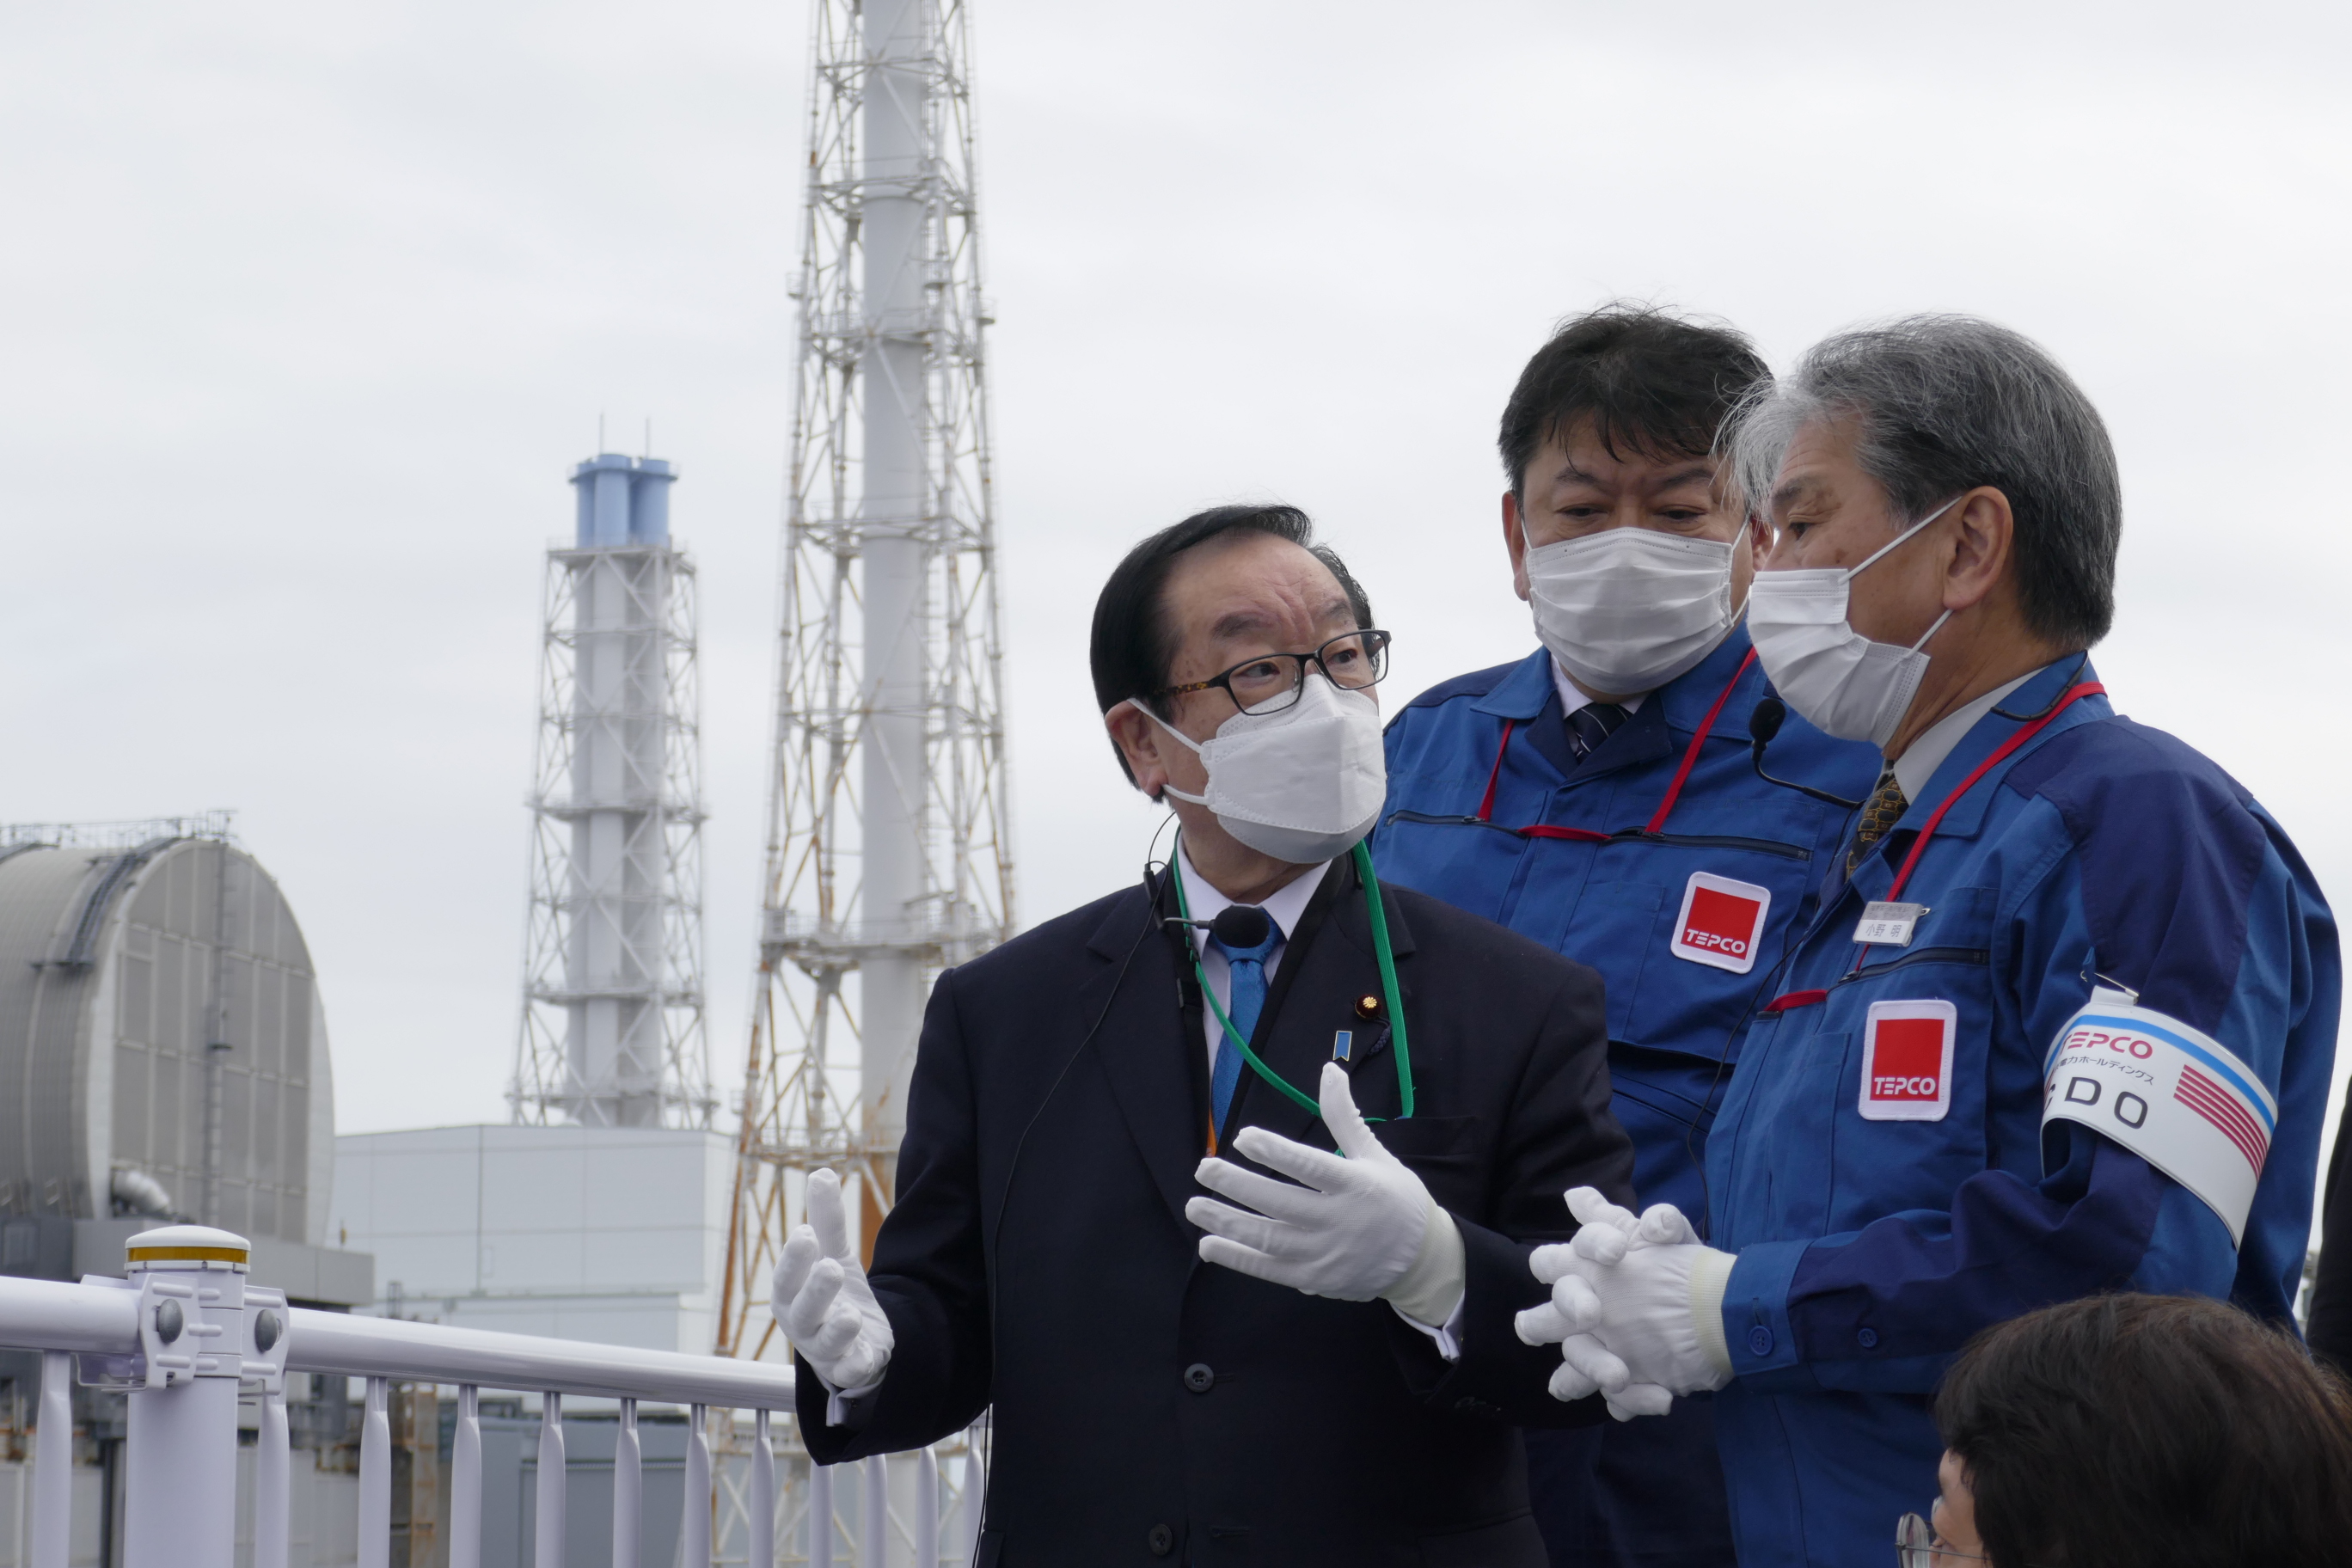 渡辺復興大臣による福島第一原子力発電所ご視察について